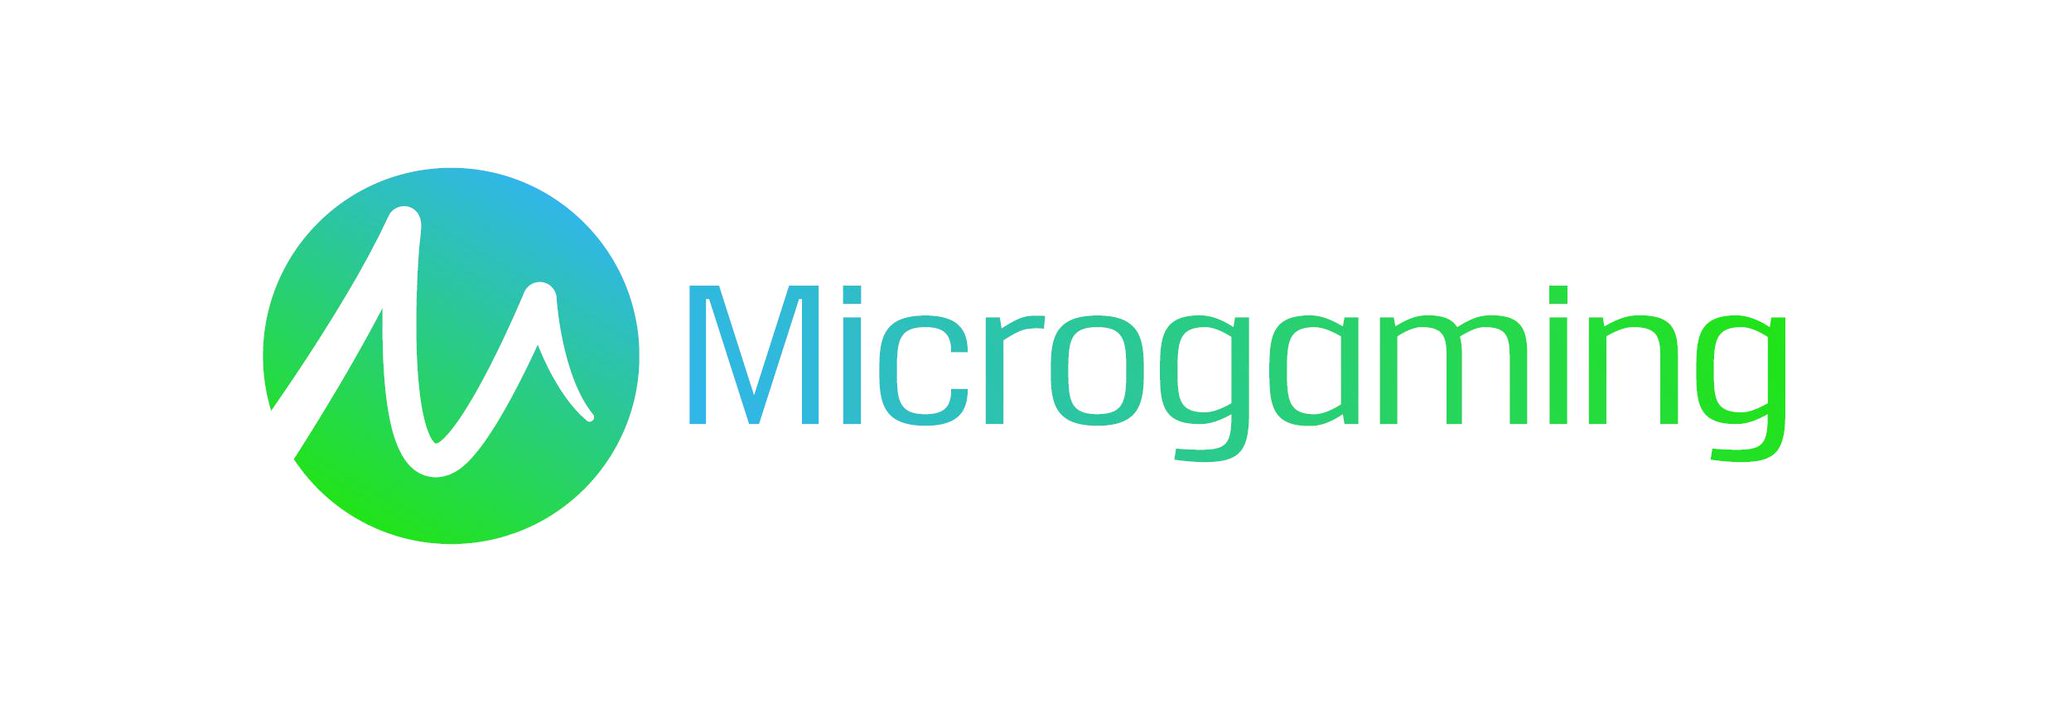 Microgaming_logo.jpg_large